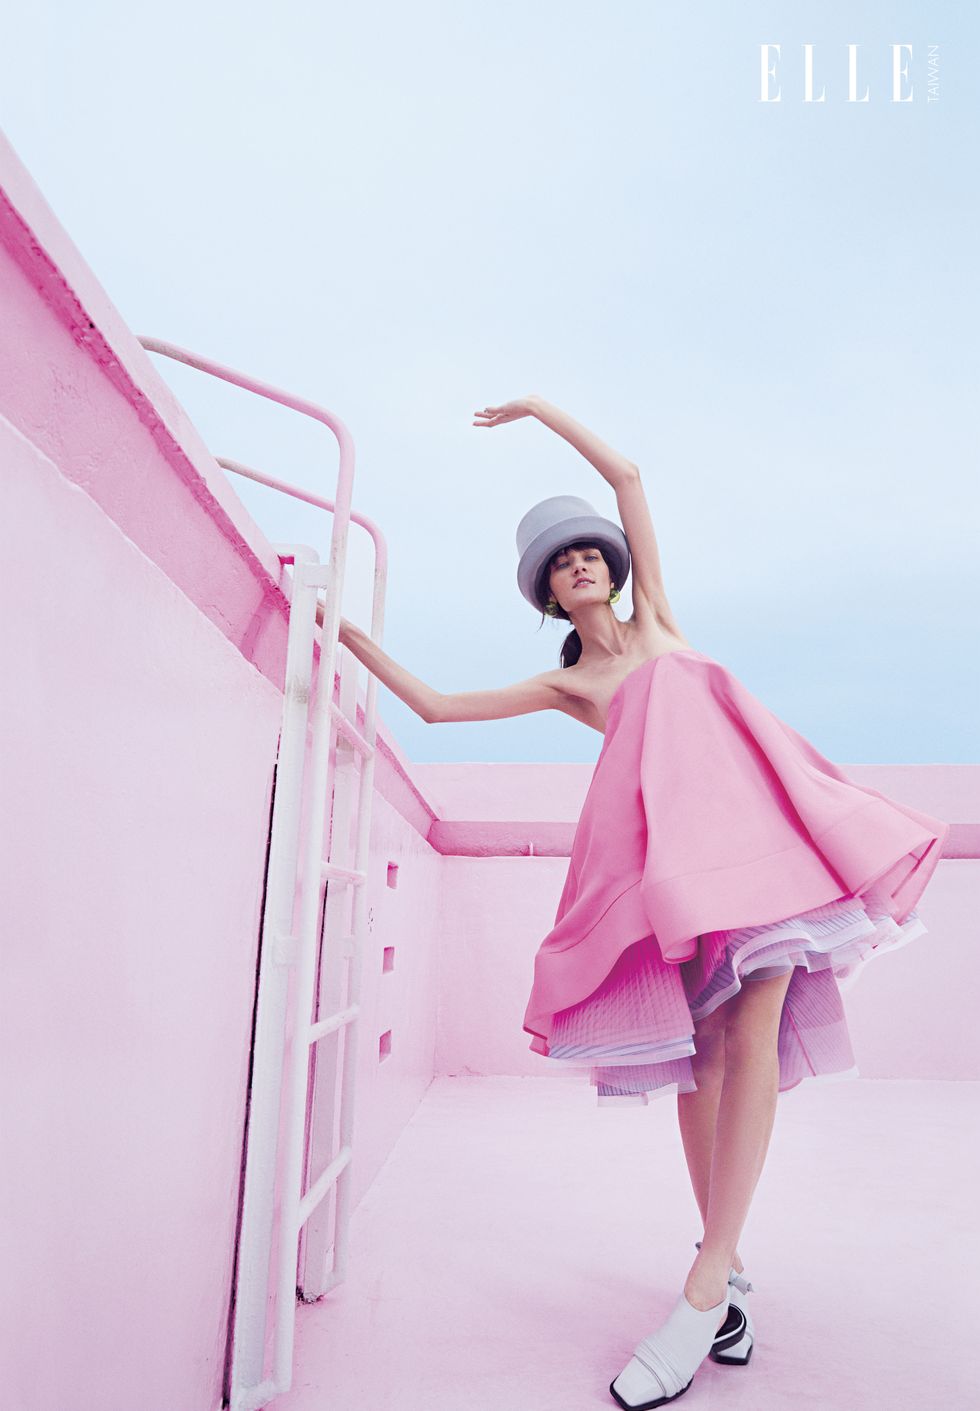 一個女人穿著粉色洋裝抓著梯子